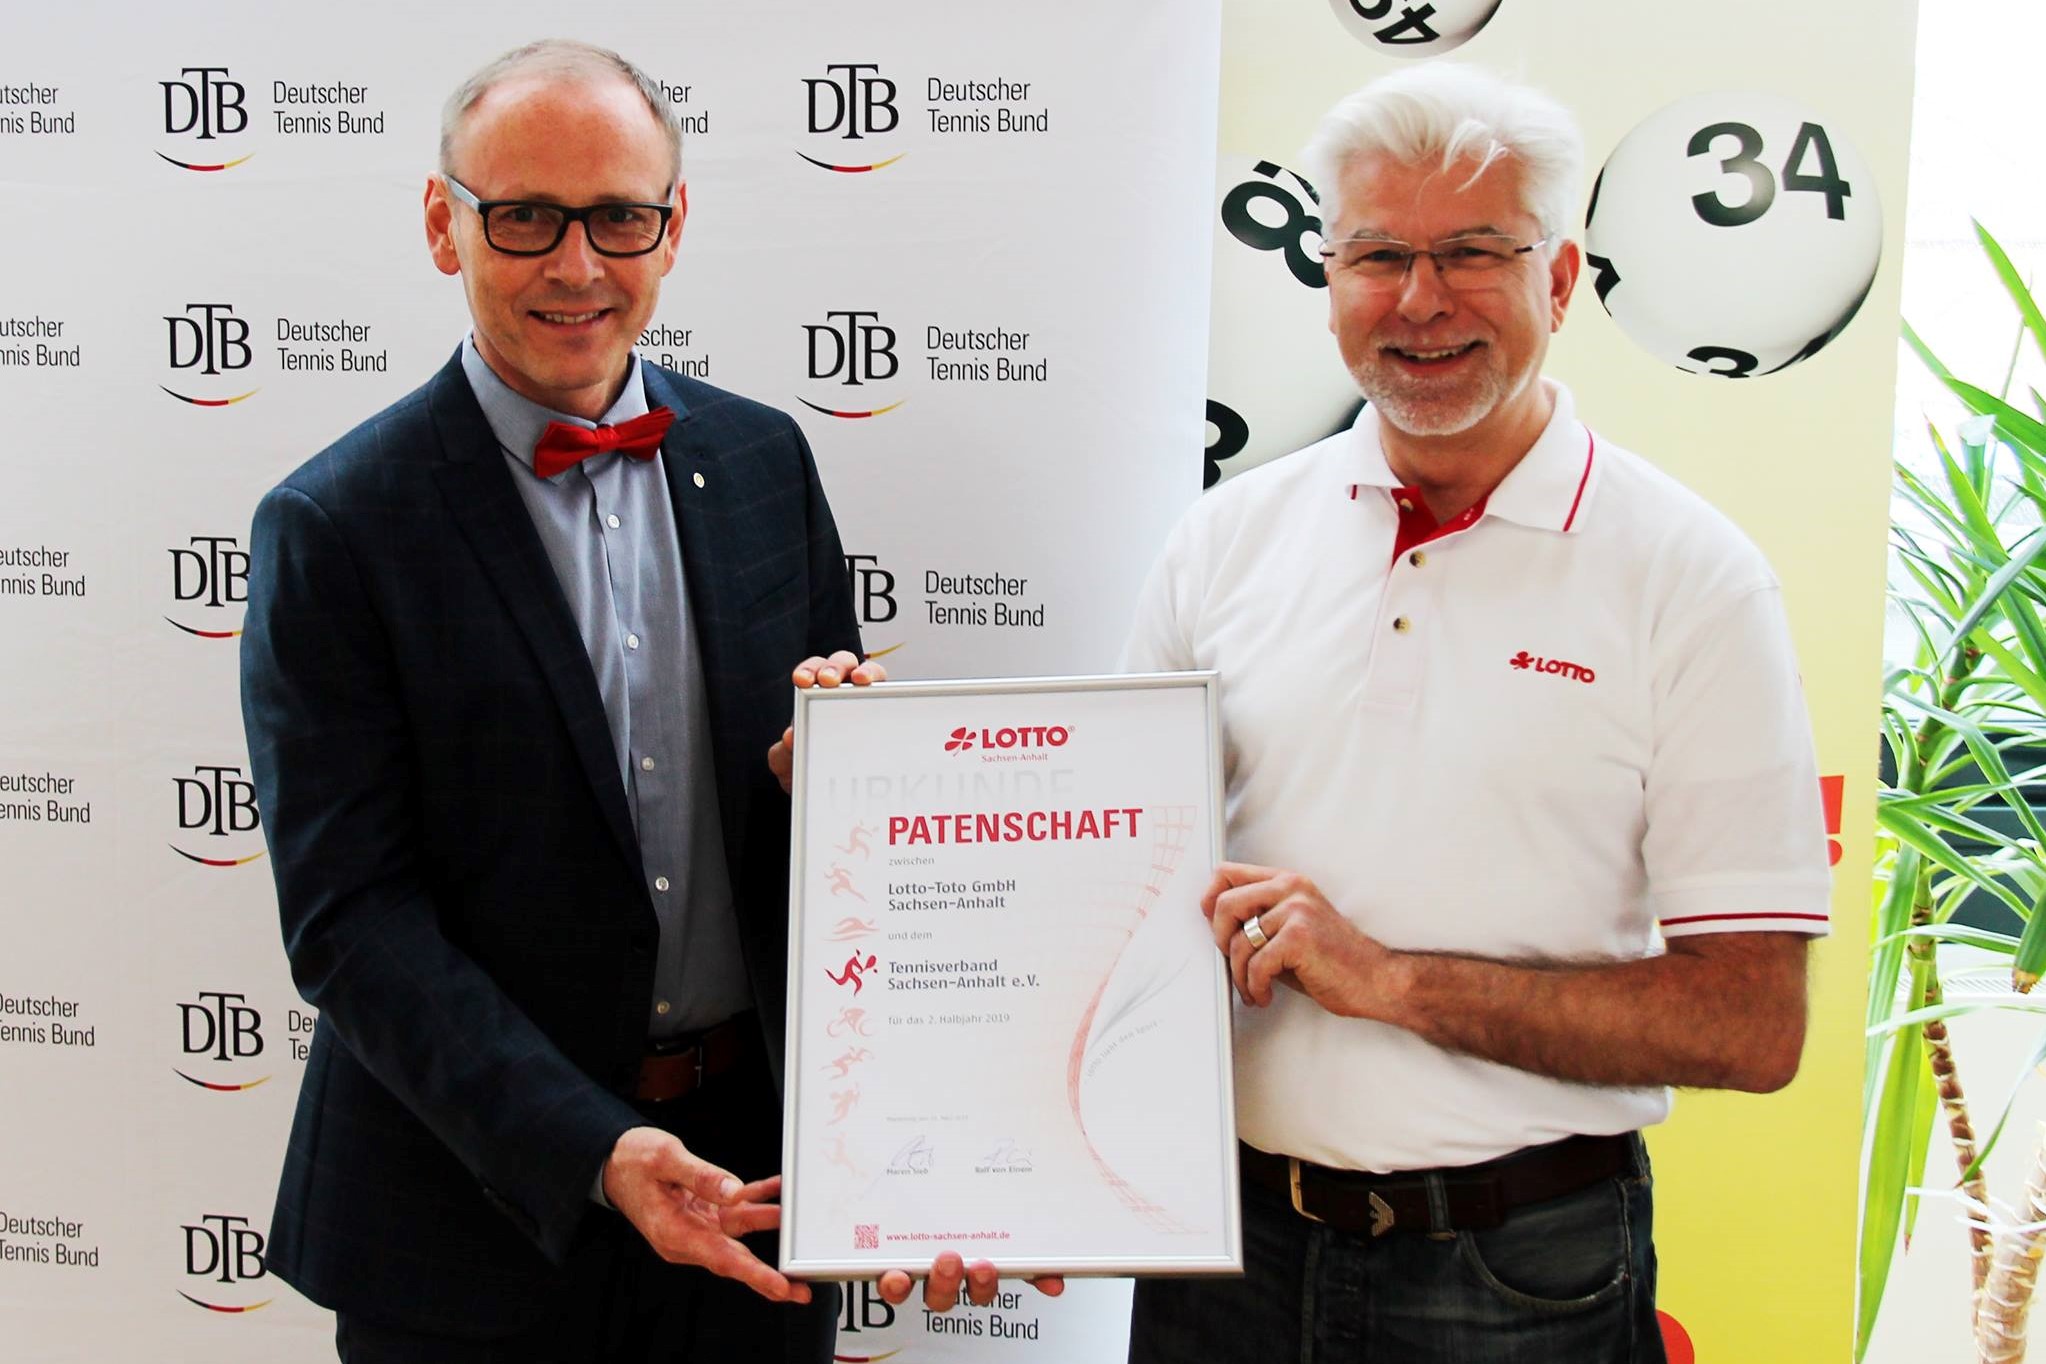 Lotto-Geschäftsführer Ralf von Einem (rechts) übergab die Patenschaftsurkunde am Wochenende an Verbandspräsidenten Axel Schmidt. (Foto: LOTTO Sachsen-Anhalt)